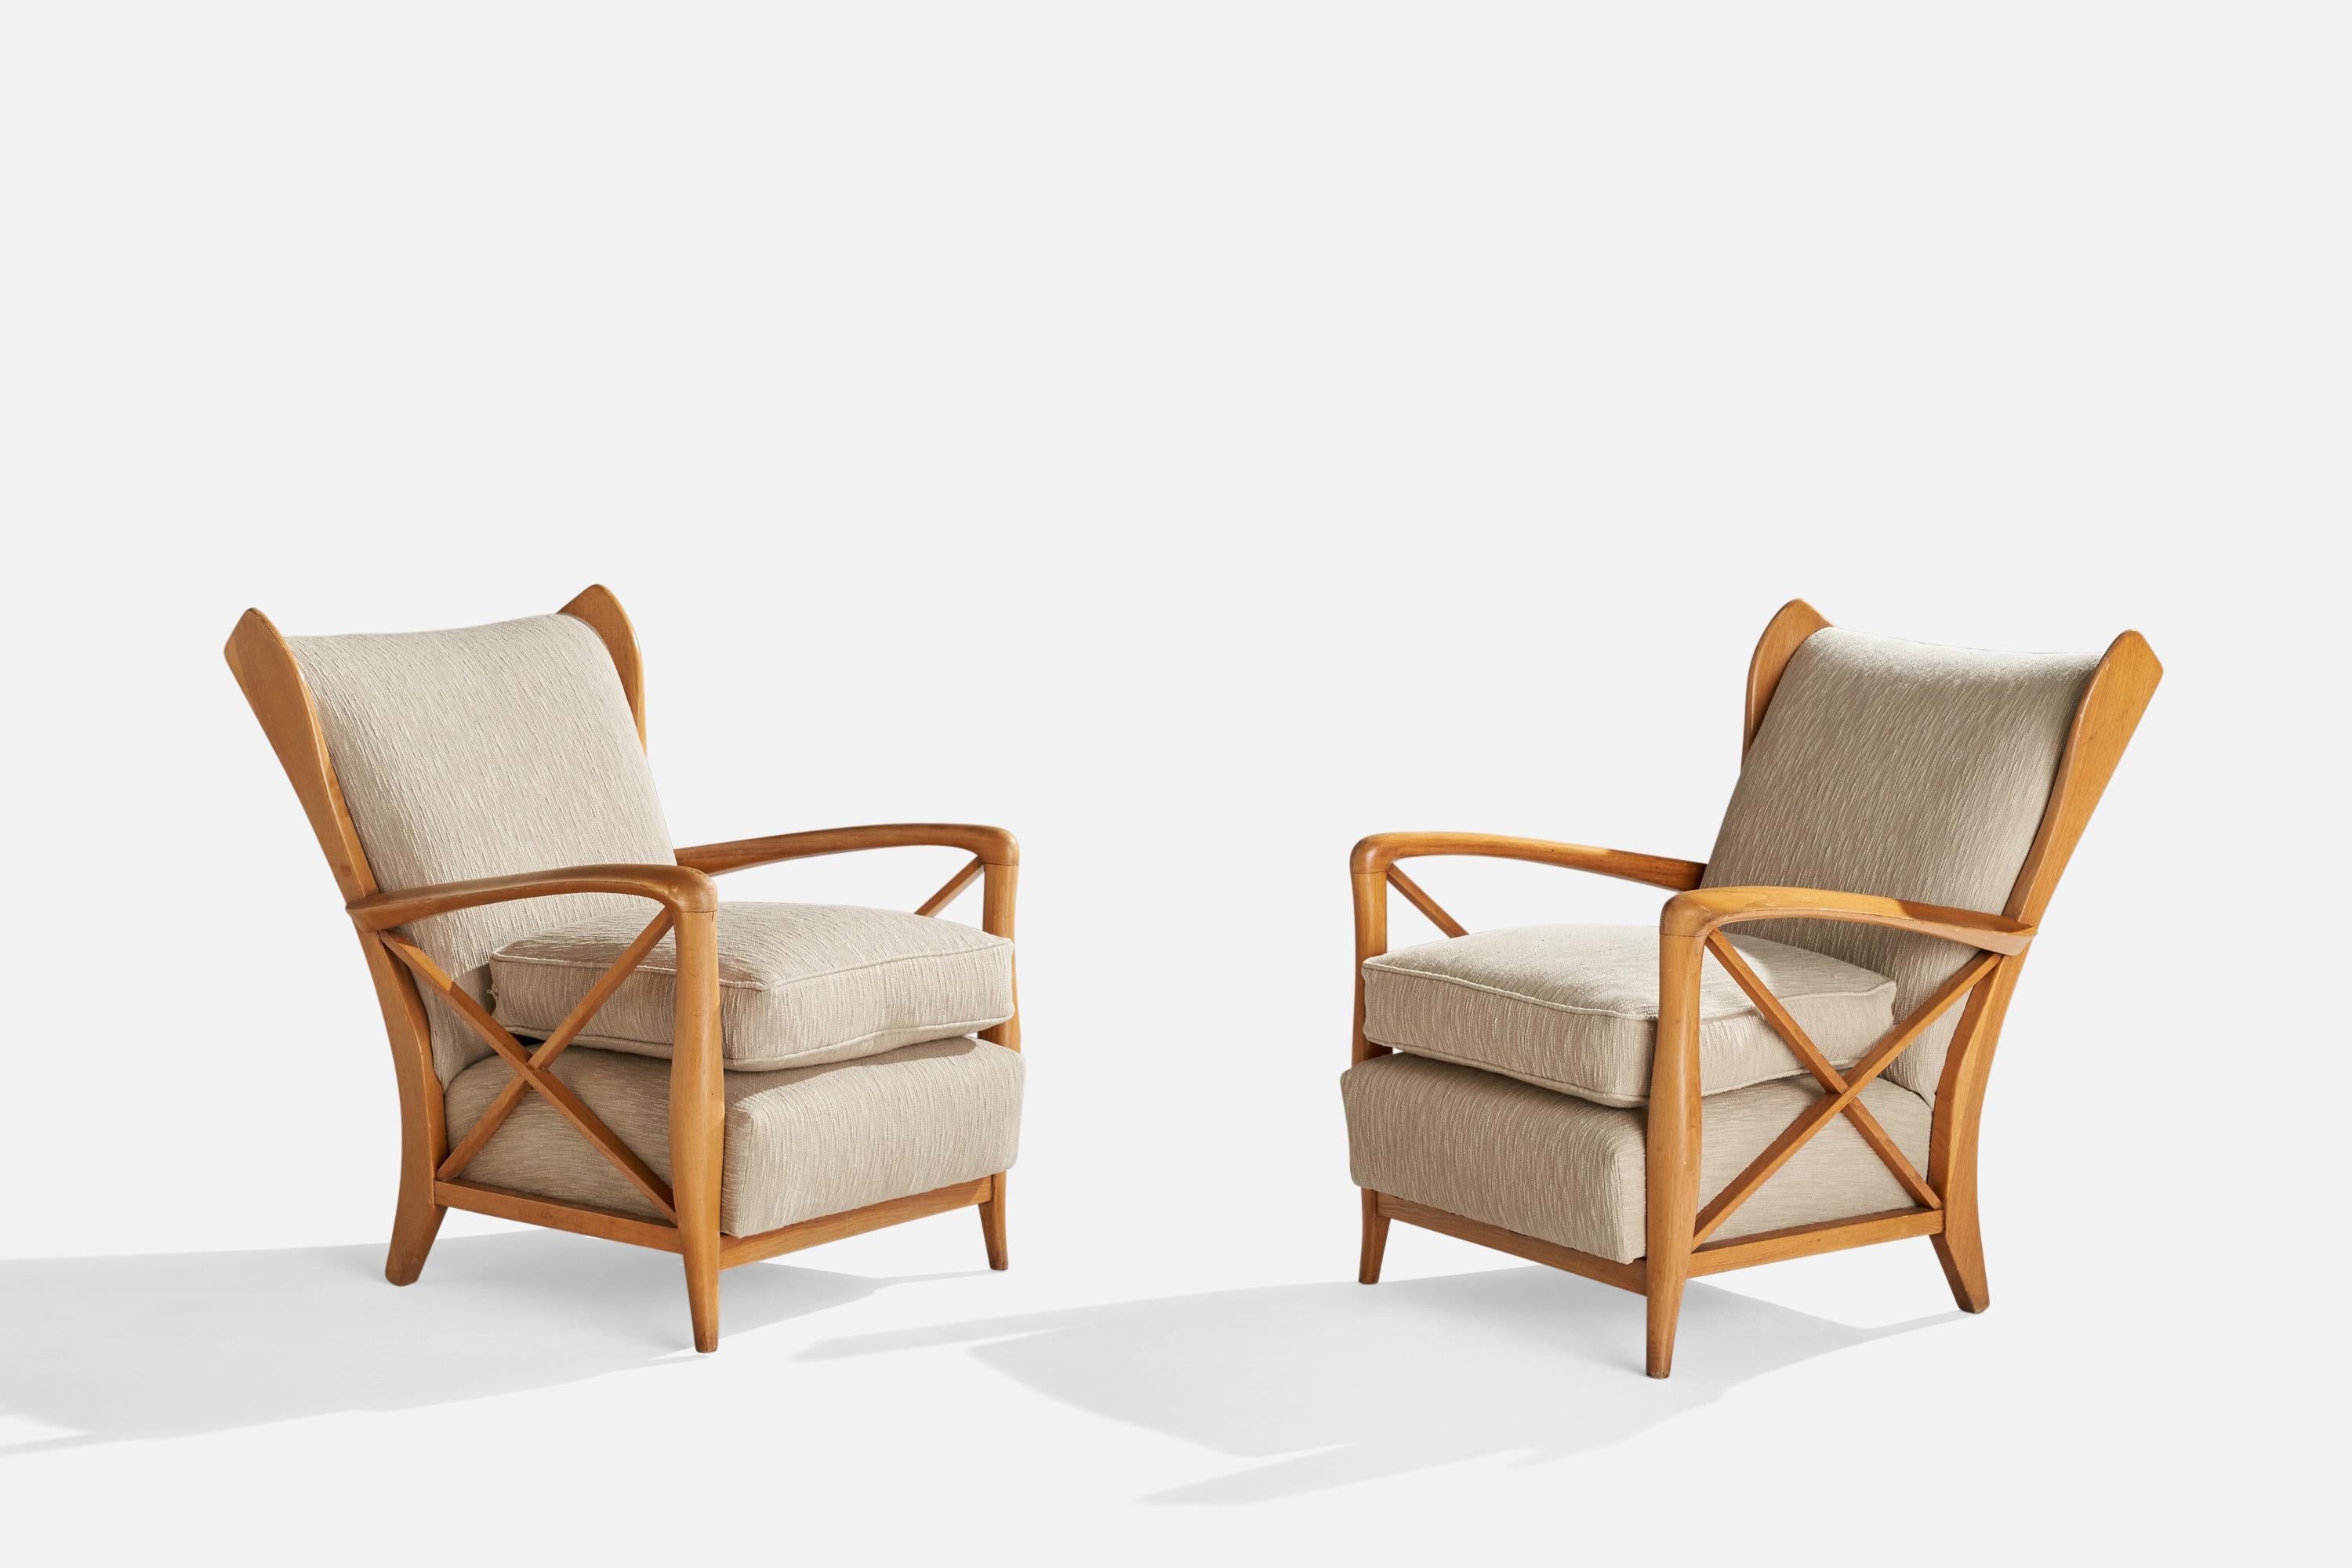 Ein Paar große Sessel aus Eiche und beigem Stoff, entworfen und hergestellt in Italien, 1940er Jahre.

Sitzhöhe 18,5